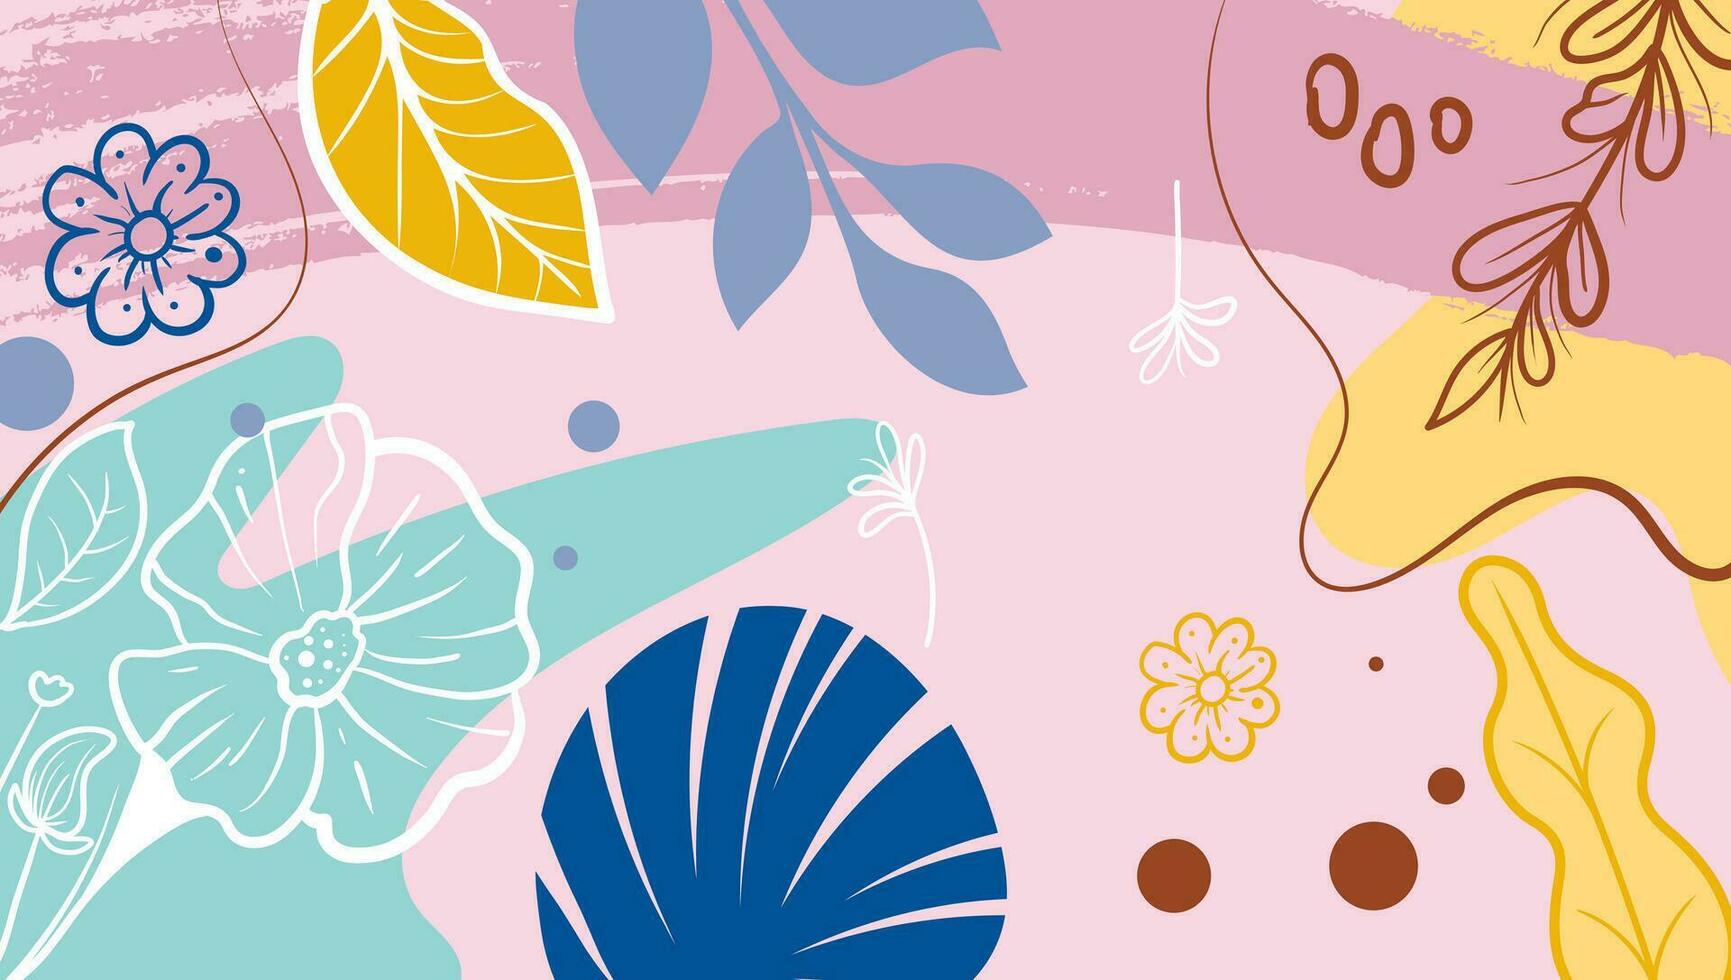 tropisch bladeren achtergrond vector. botanisch gebladerte banier ontwerp hand- getrokken kleurrijk voor wikkels, achtergronden, ansichtkaarten, groet kaarten, bruiloft uitnodigingen, romantisch evenementen vector